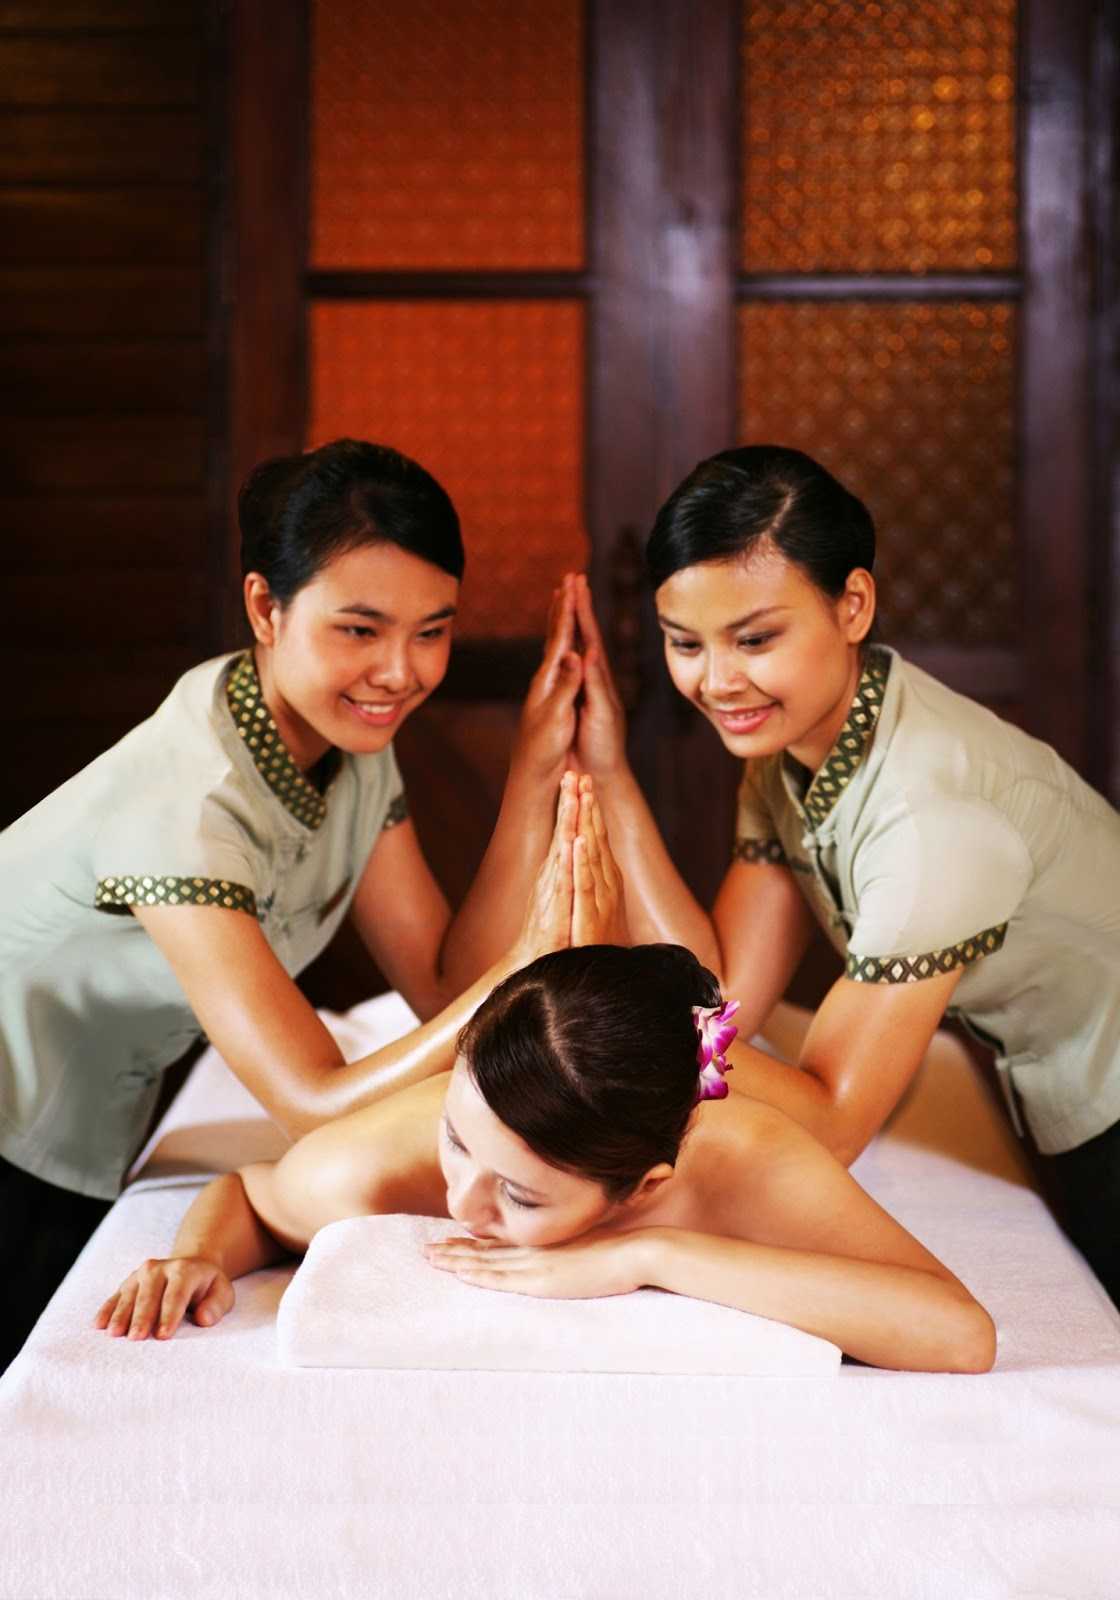 тайский массаж грудью что это такое фото 32